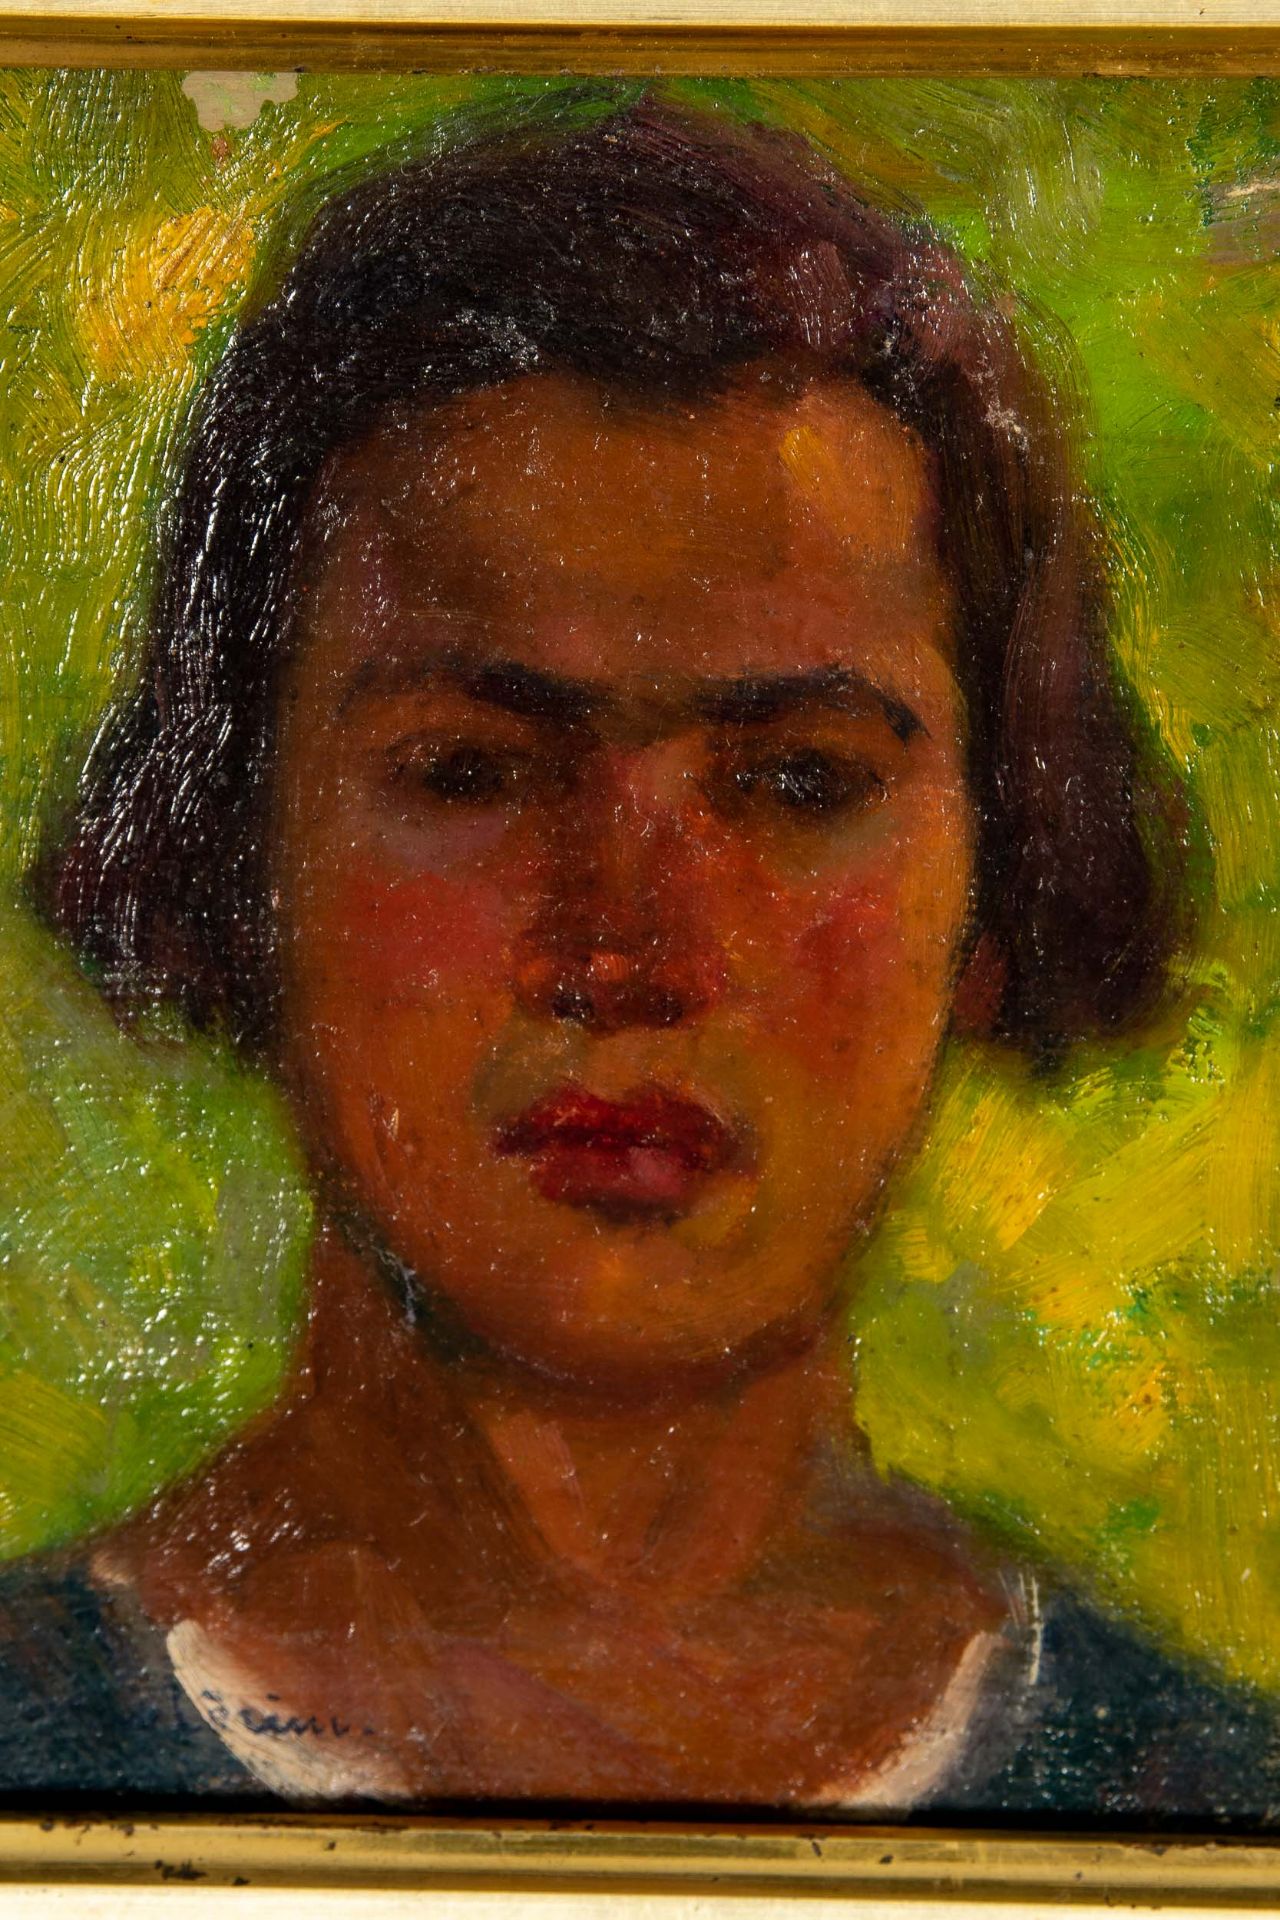 "Porträt", Kopfporträt eines jungen Mannes vor grünlich- gelbem Hintergrund; kleinformatiges Gemäld - Bild 3 aus 6